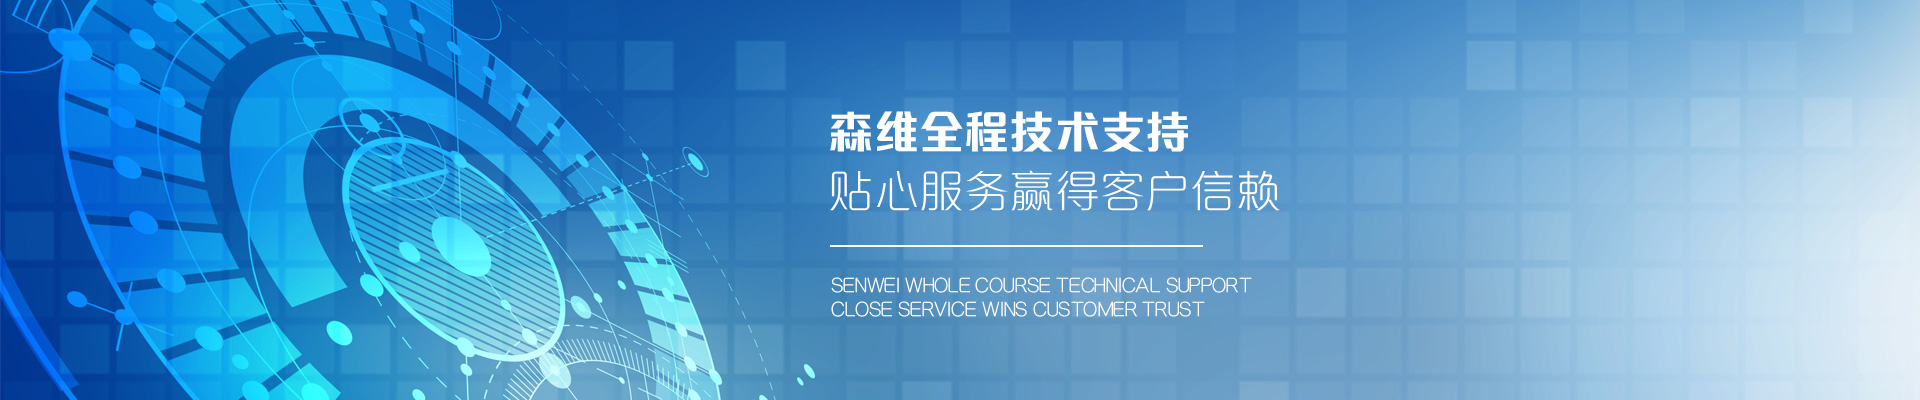 森维电子-森维全程技术支持，贴心服务赢得客户信赖